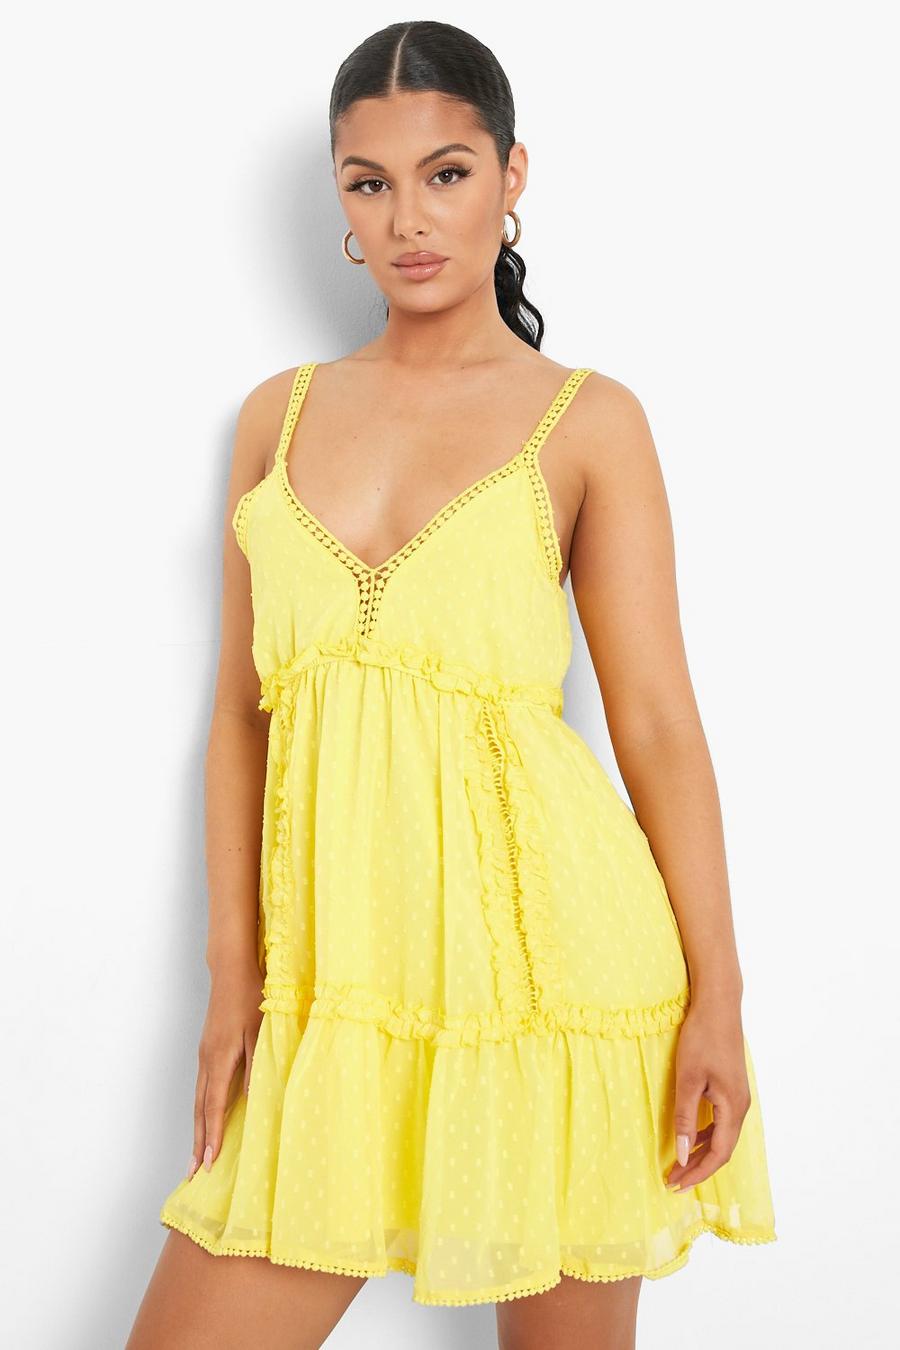 צהוב בוהק שמלת סווינג מבד רשת דובי עם כתפיות דקות ופאנל קרושה